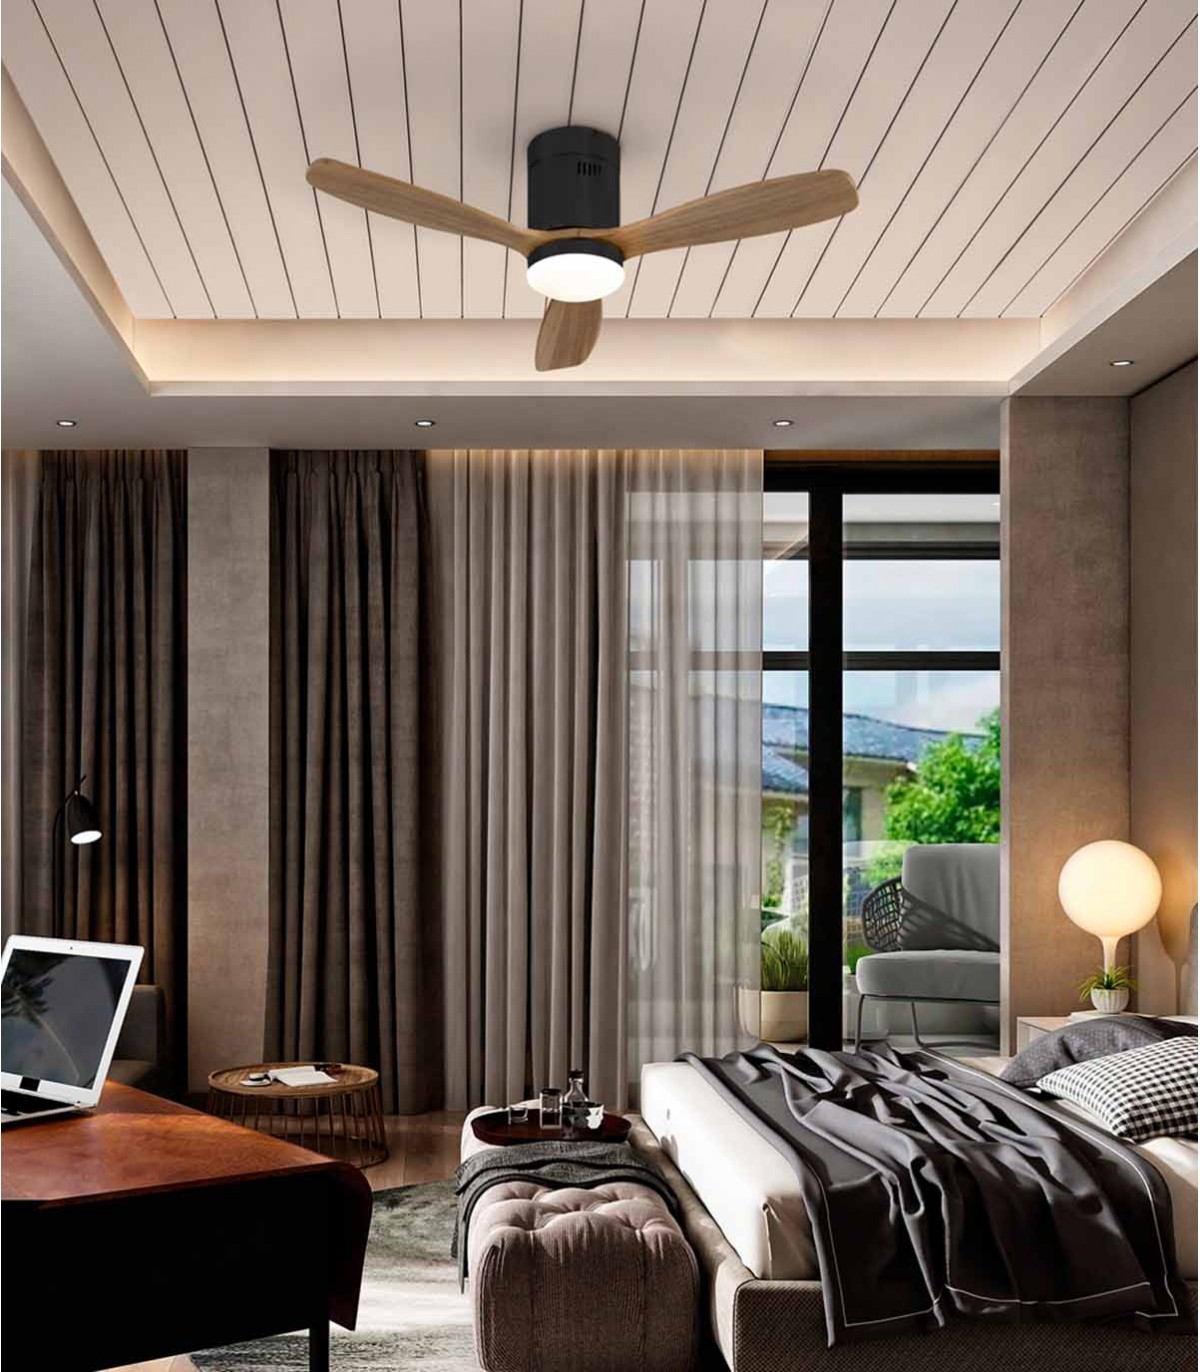 Ventilateurs, Luminaires de plafond - Éclairage